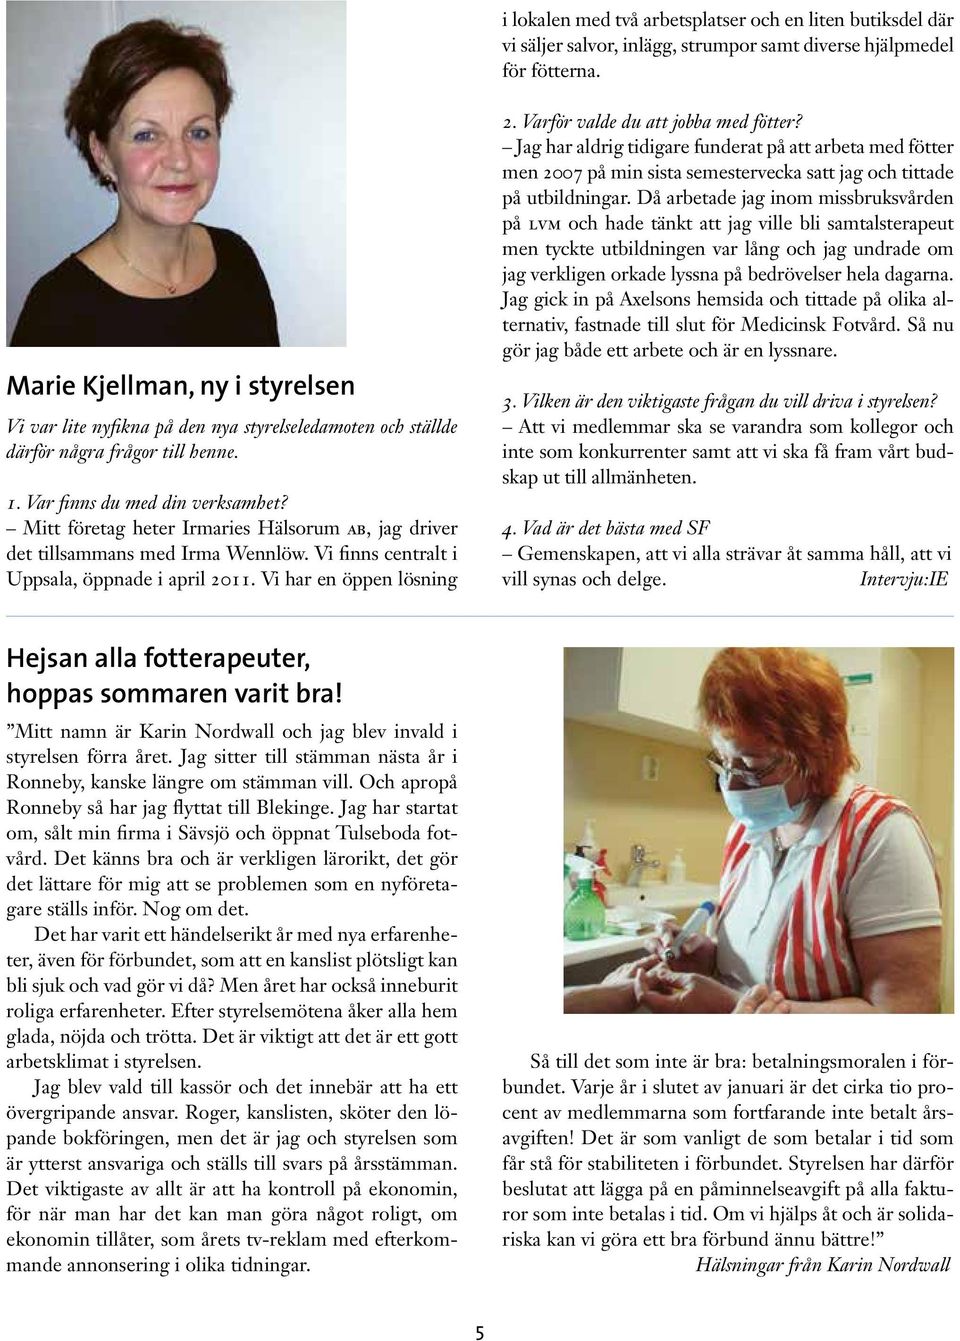 Mitt företag heter Irmaries Hälsorum ab, jag driver det tillsammans med Irma Wennlöw. Vi finns centralt i Uppsala, öppnade i april 2011. Vi har en öppen lösning 2.